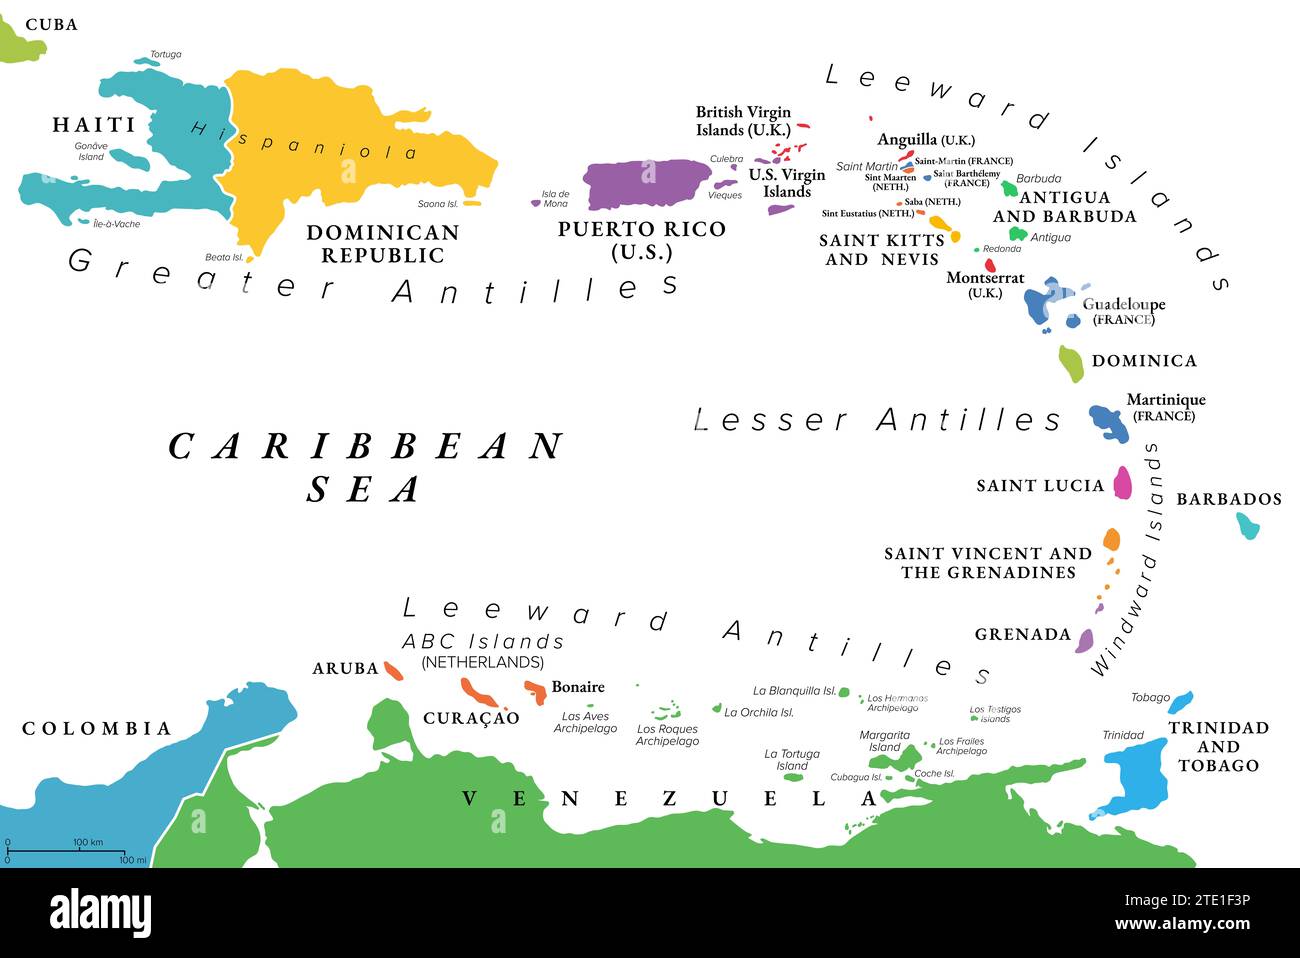 Kleine Antillen der Karibik, bunte politische Landkarte. Inselgruppe zwischen den Großen Antillen und Südamerika. Stockfoto